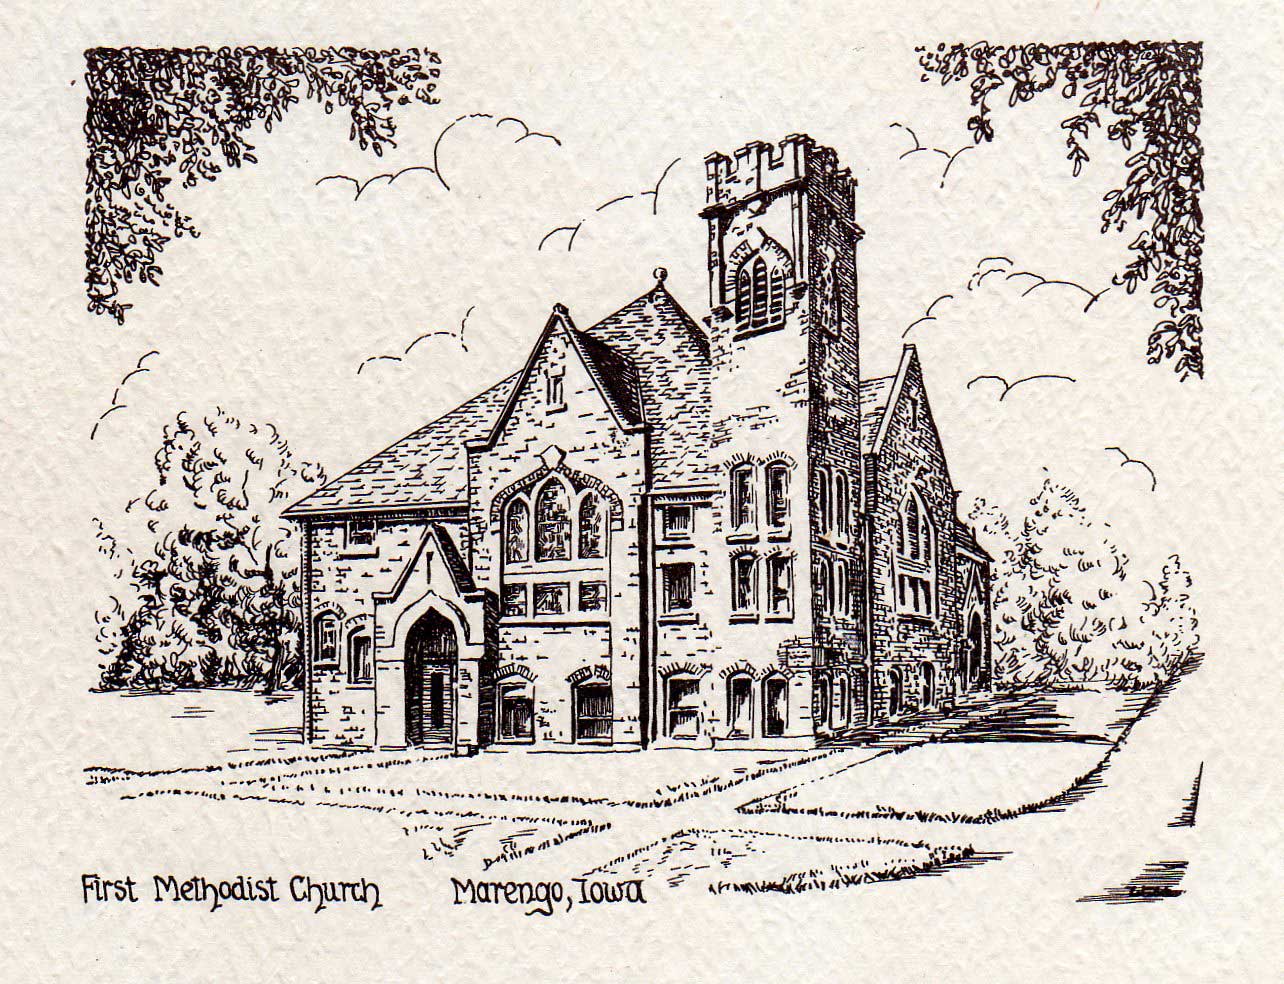 First Methodist Church, Marengo